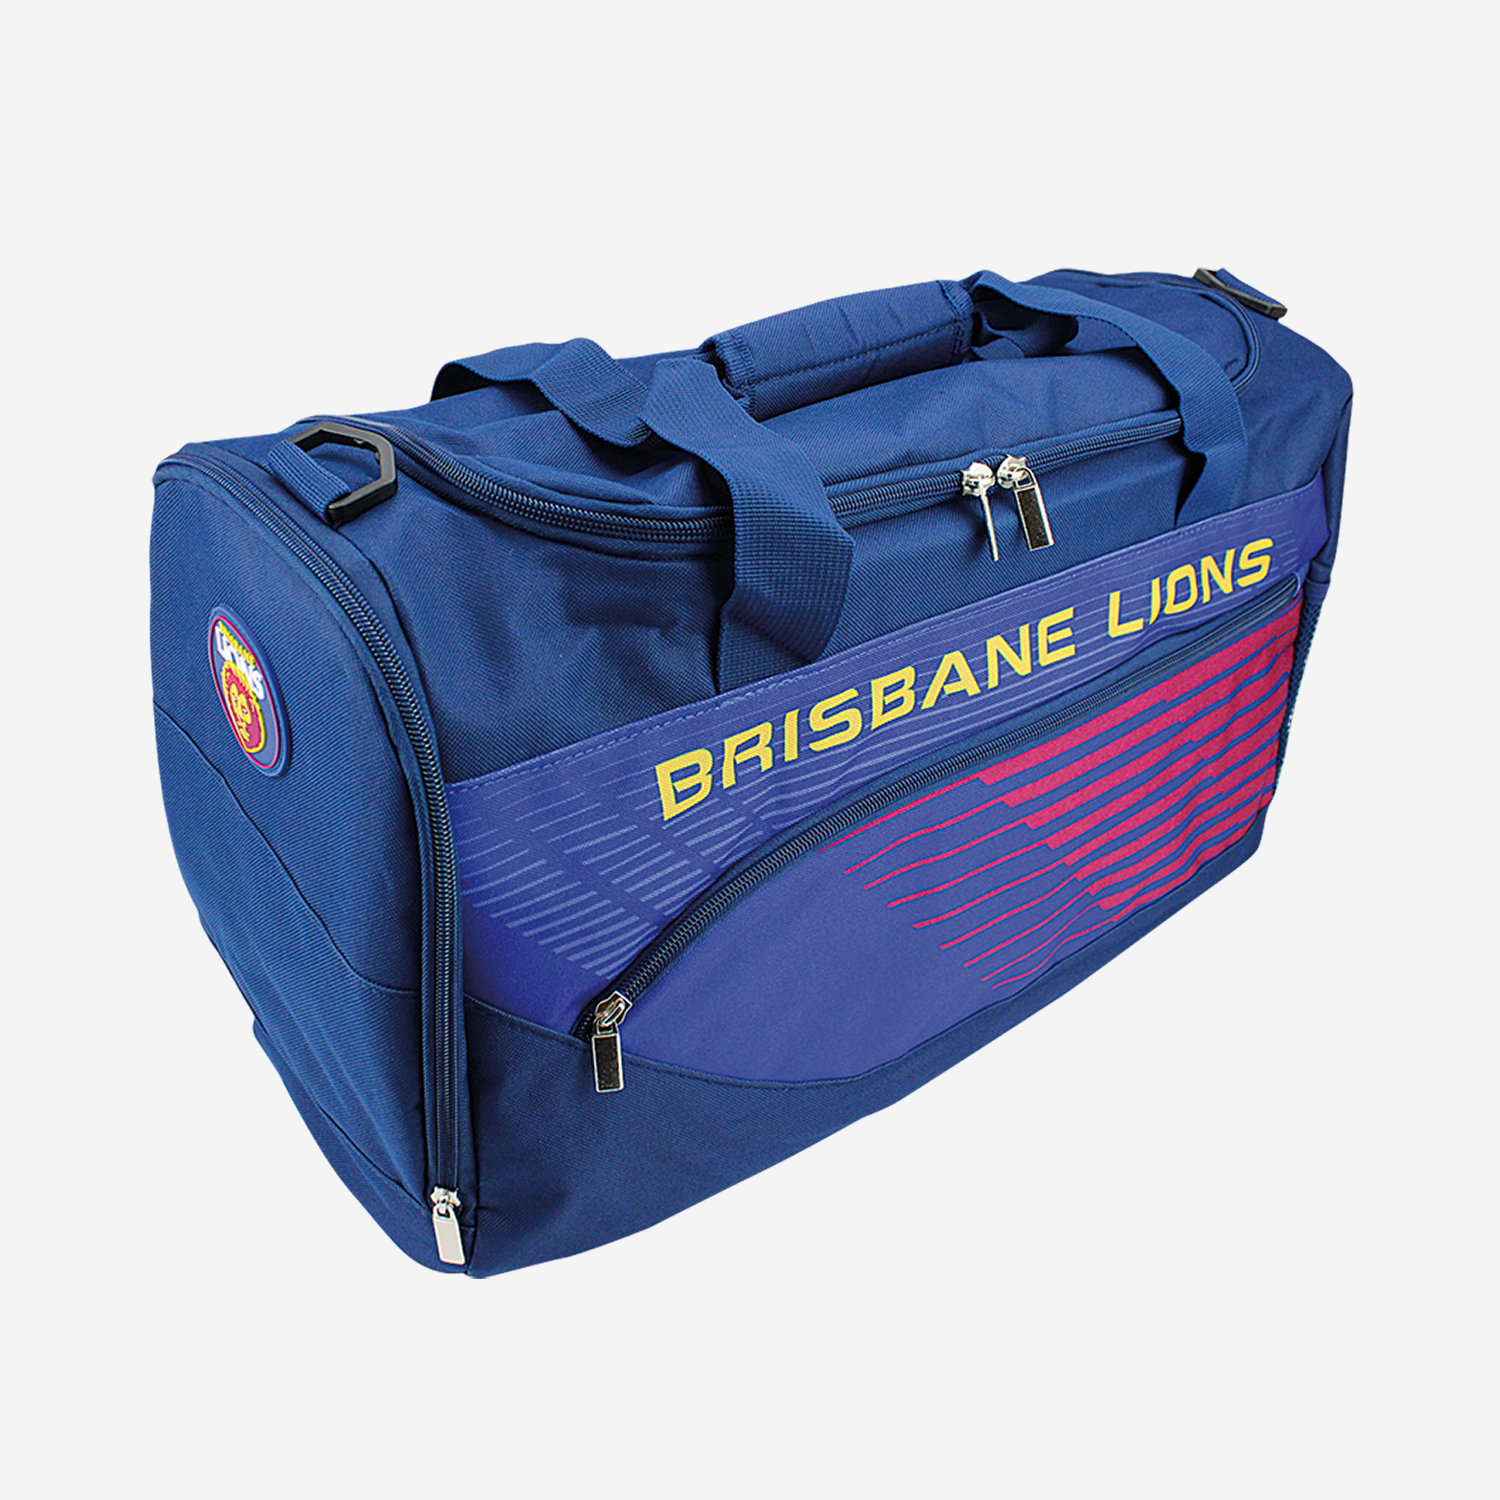 Brisbane Lions Bag